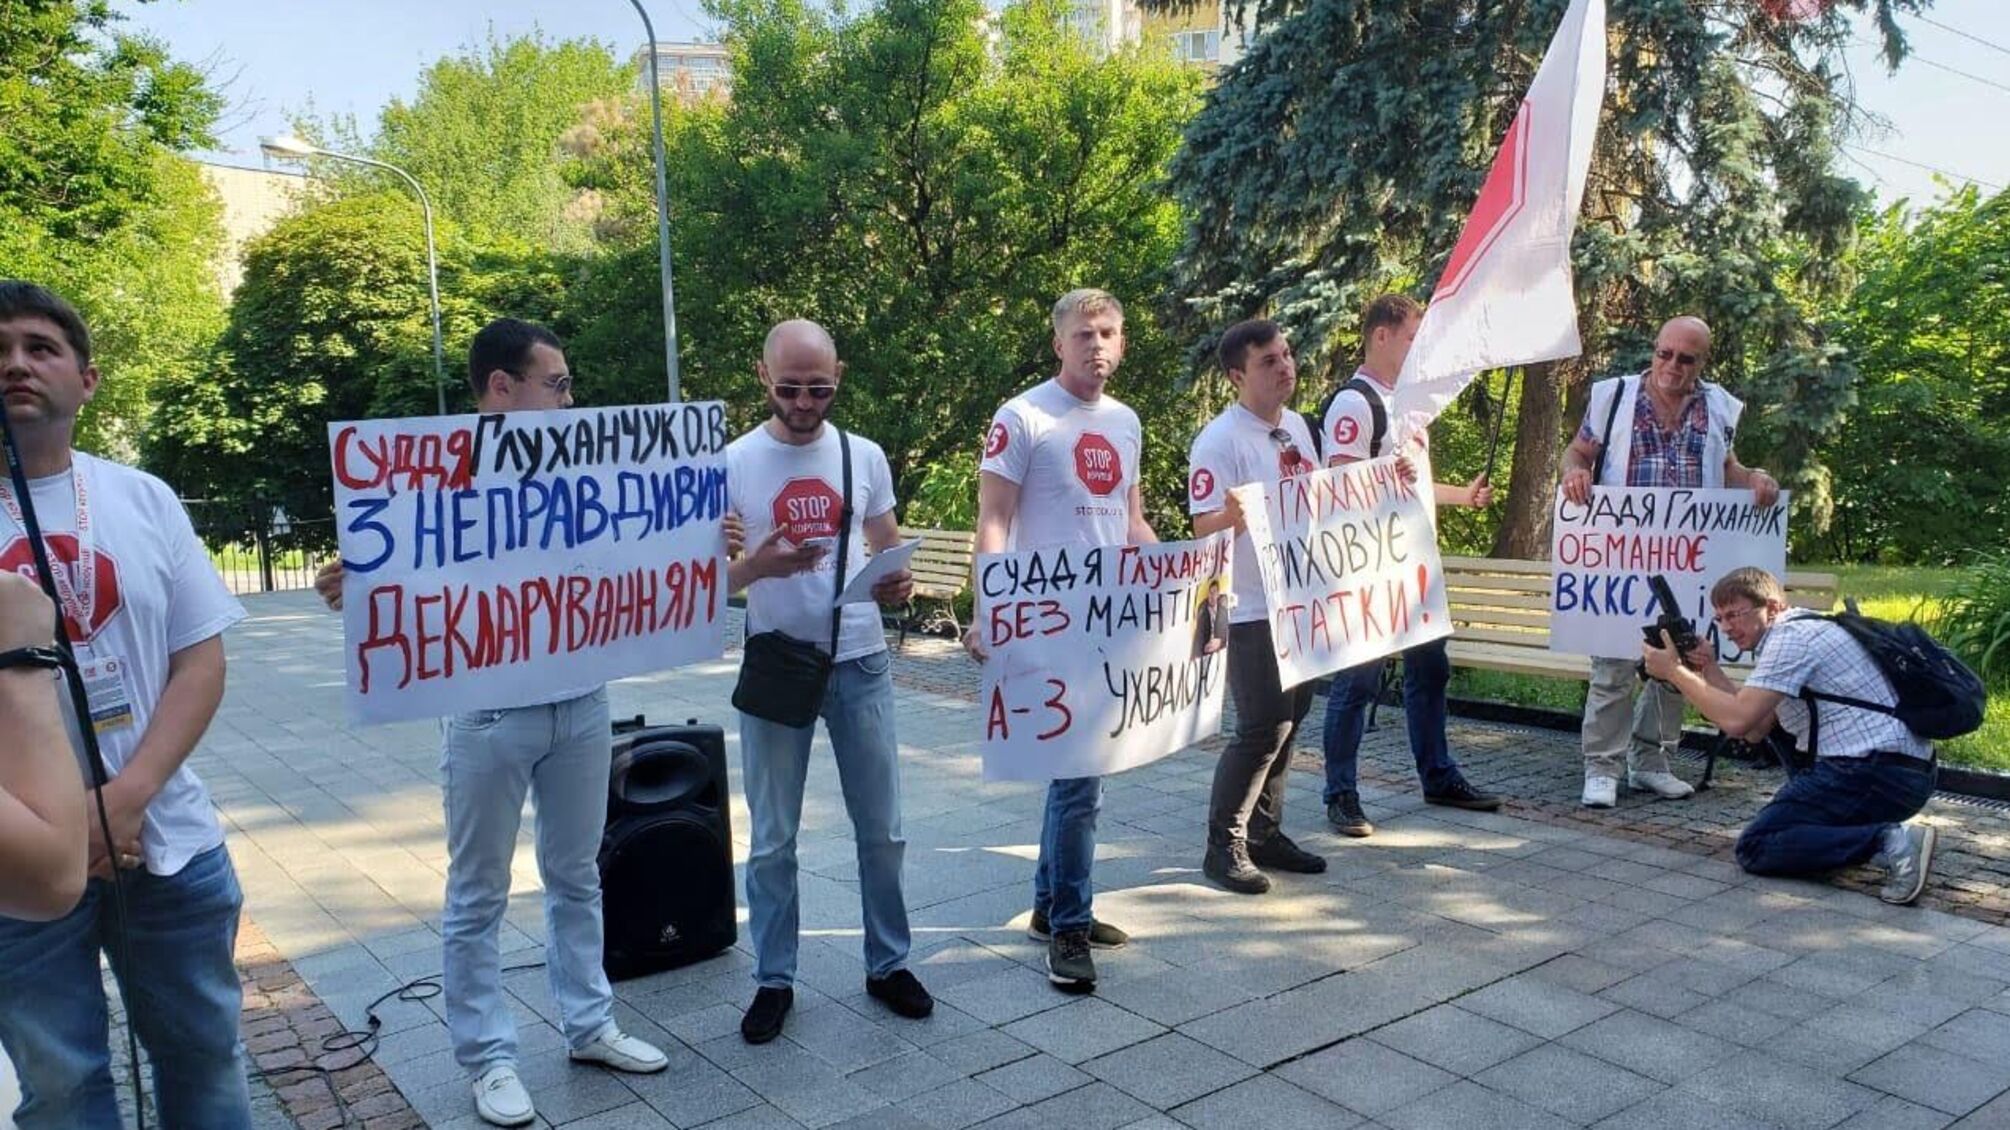 Зняти мантію з судді Глуханчука: під ВККСУ акція протесту